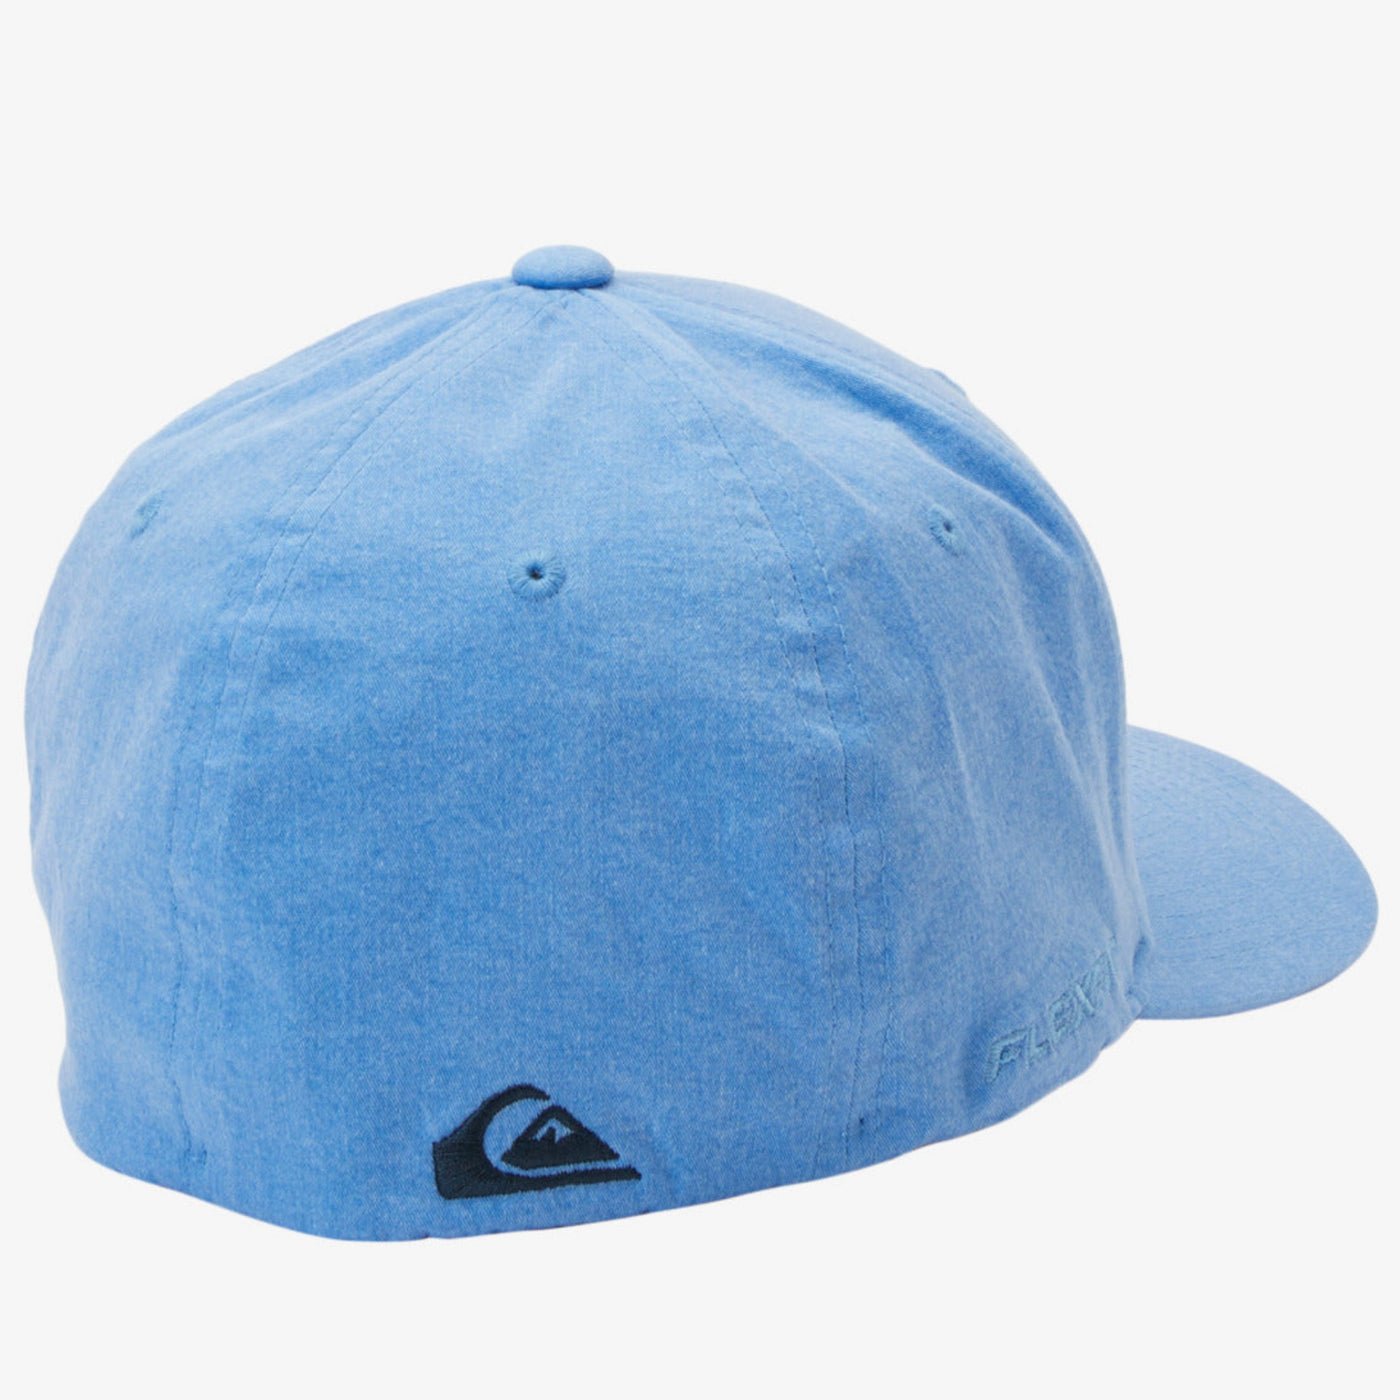 Quiksilver Men's Sidestay Flexfit Cap - Azure Blue